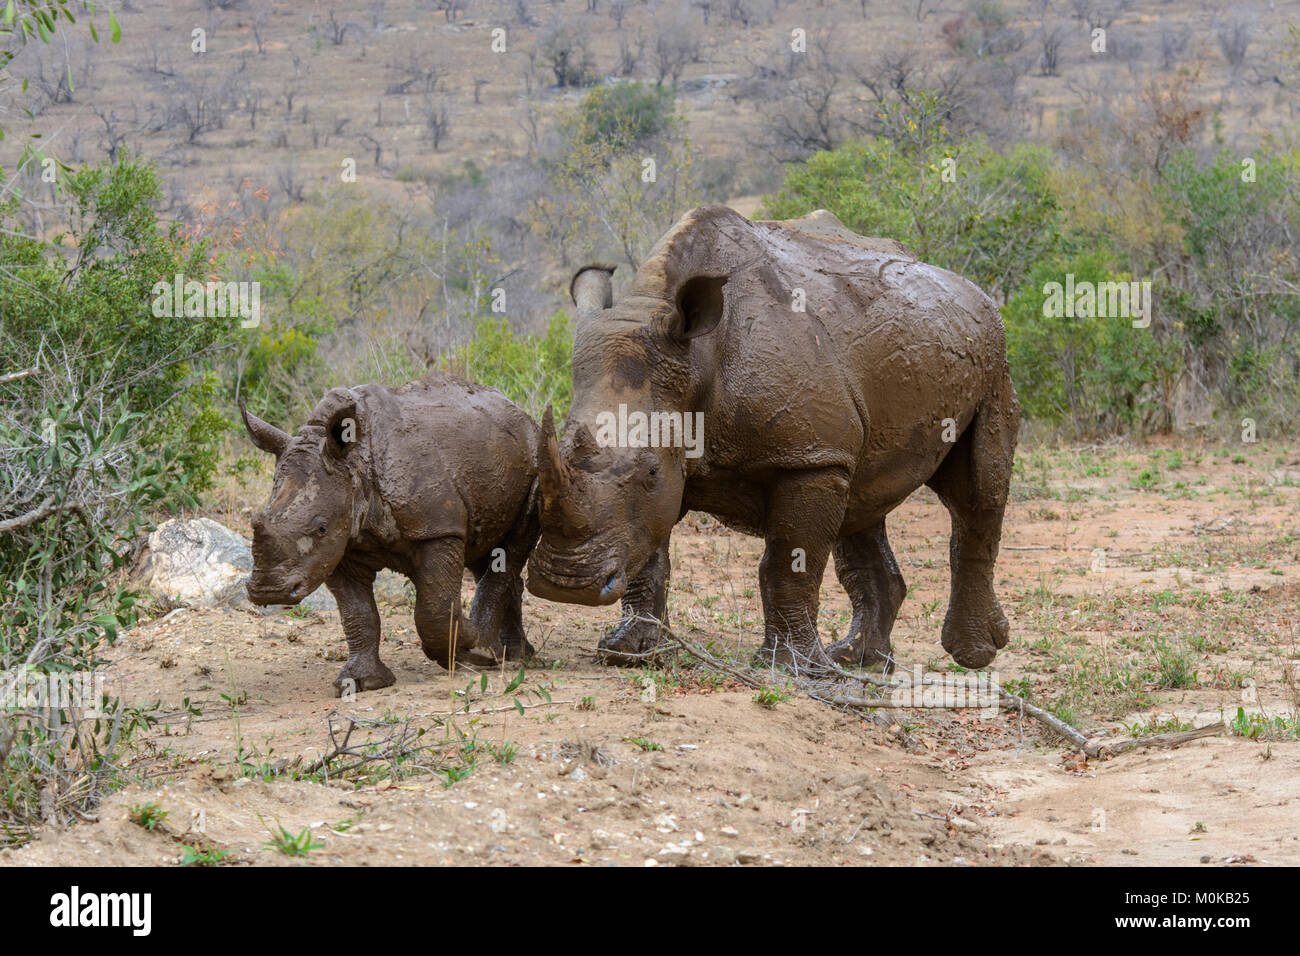 La madre y el bebé de rinoceronte blanco (Ceratotherium simum) cubierto de barro tras un baño de barro en el Parque Nacional Kruger, Sudáfrica Foto de stock